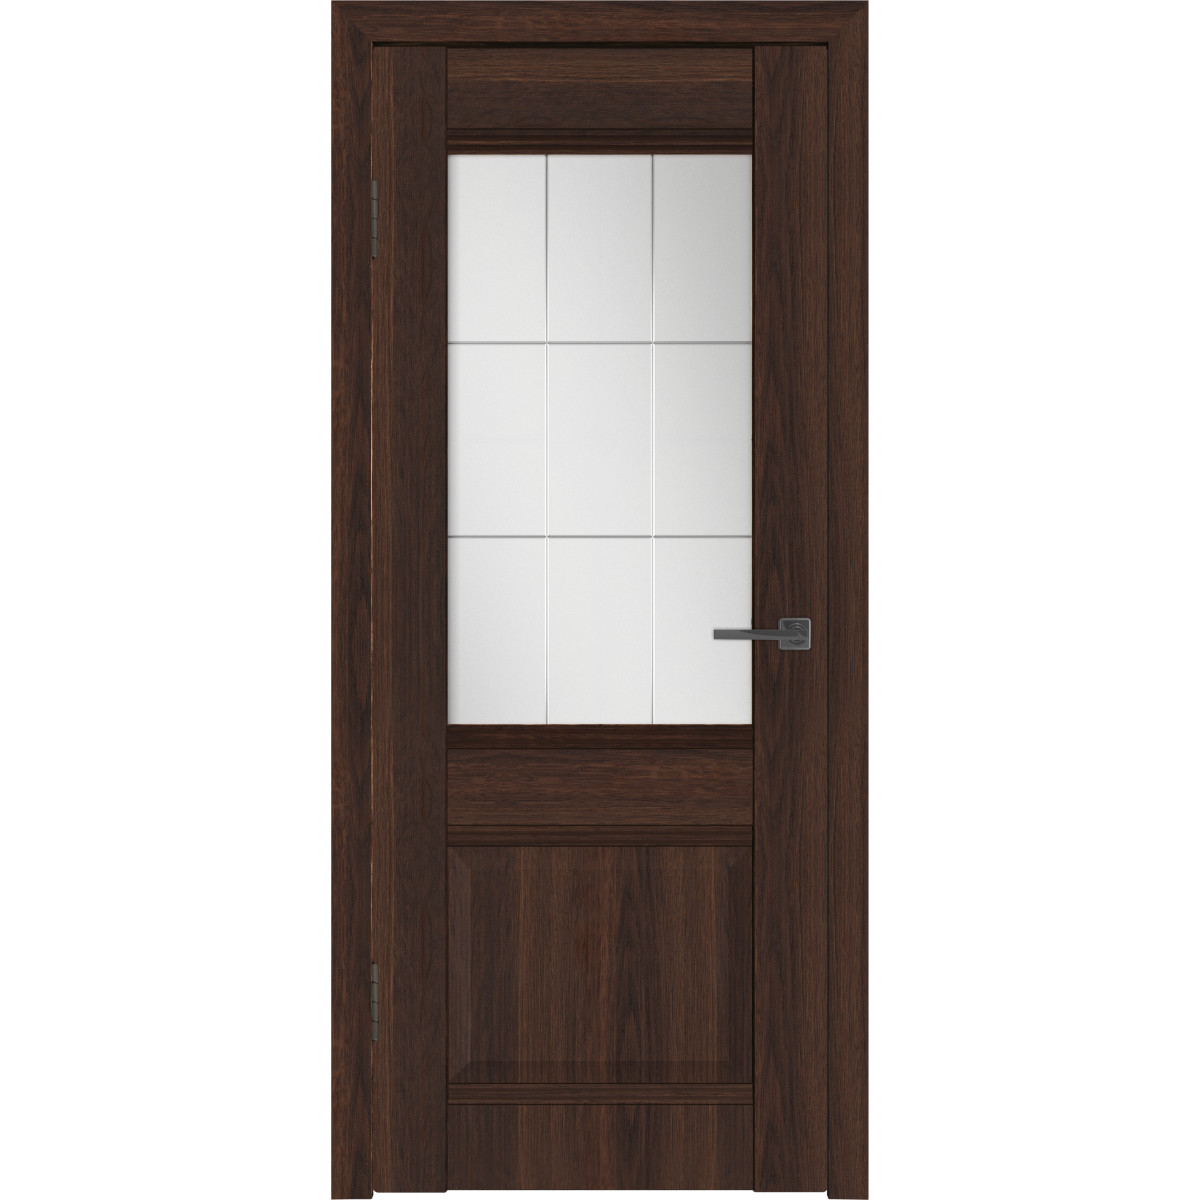 Дверь межкомнатная остекленная с замком и петлями в комплекте Классик 2 70x200 см ПВХ цвет каштан